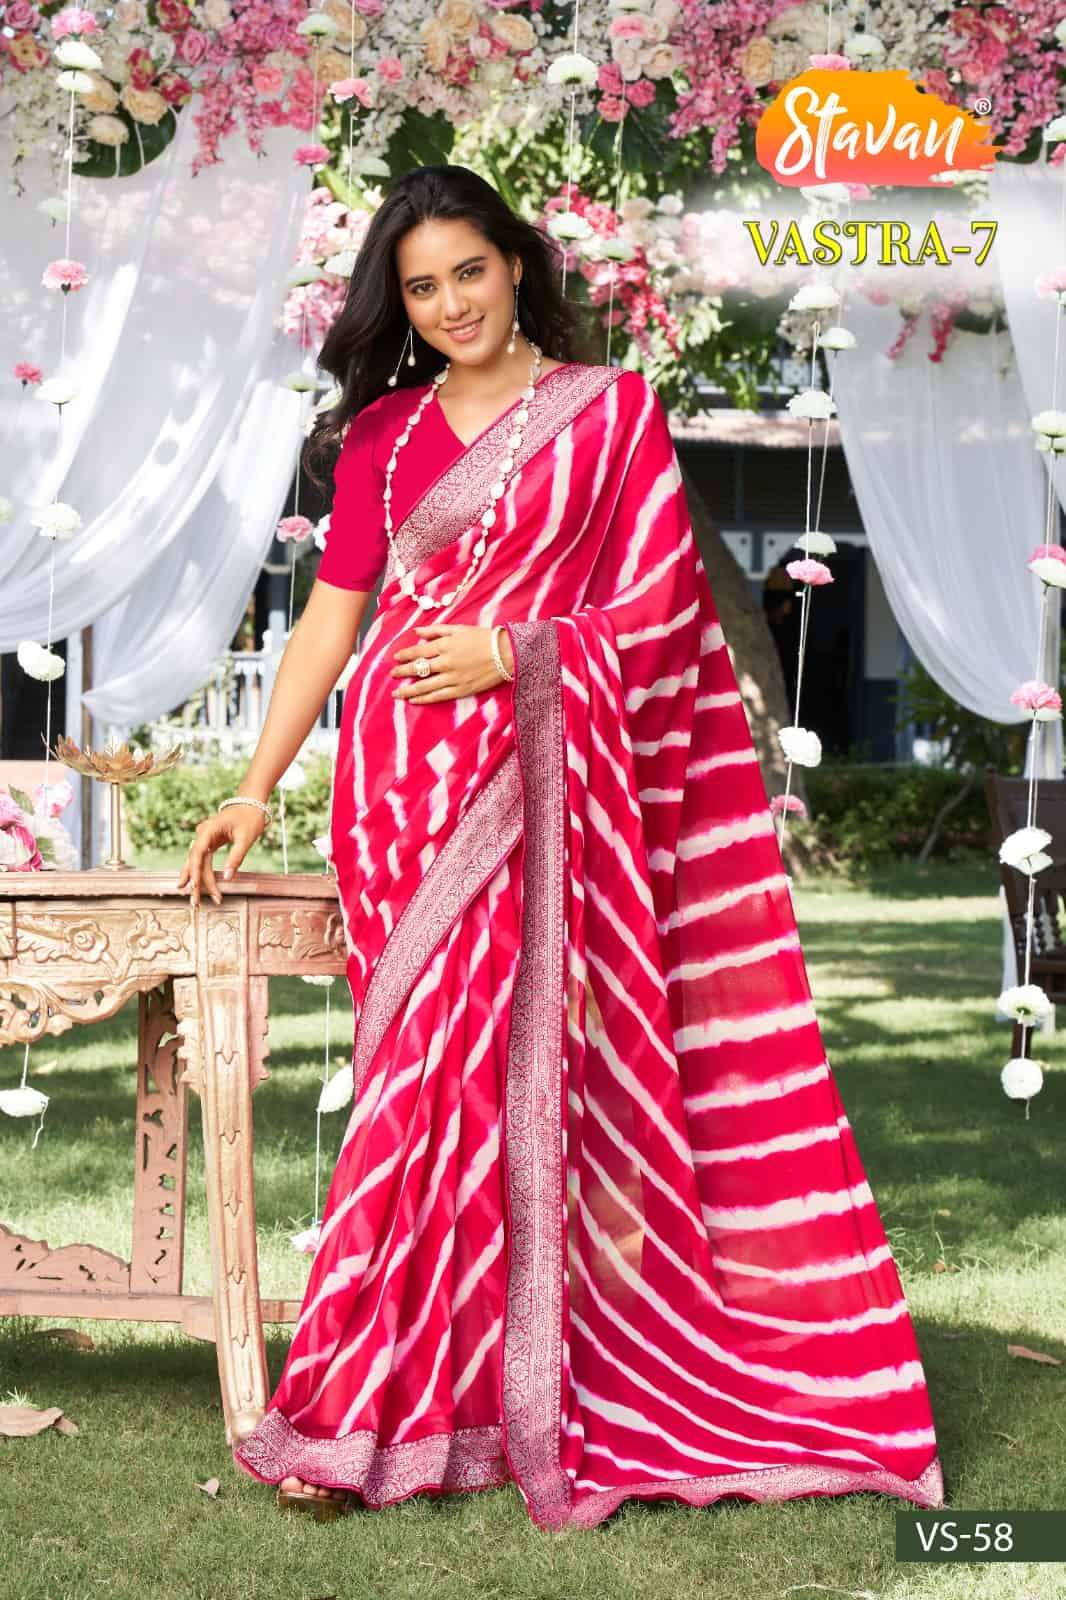 Stavan Vastra Vol 7 Festive Wear Style Designer Saree Collection